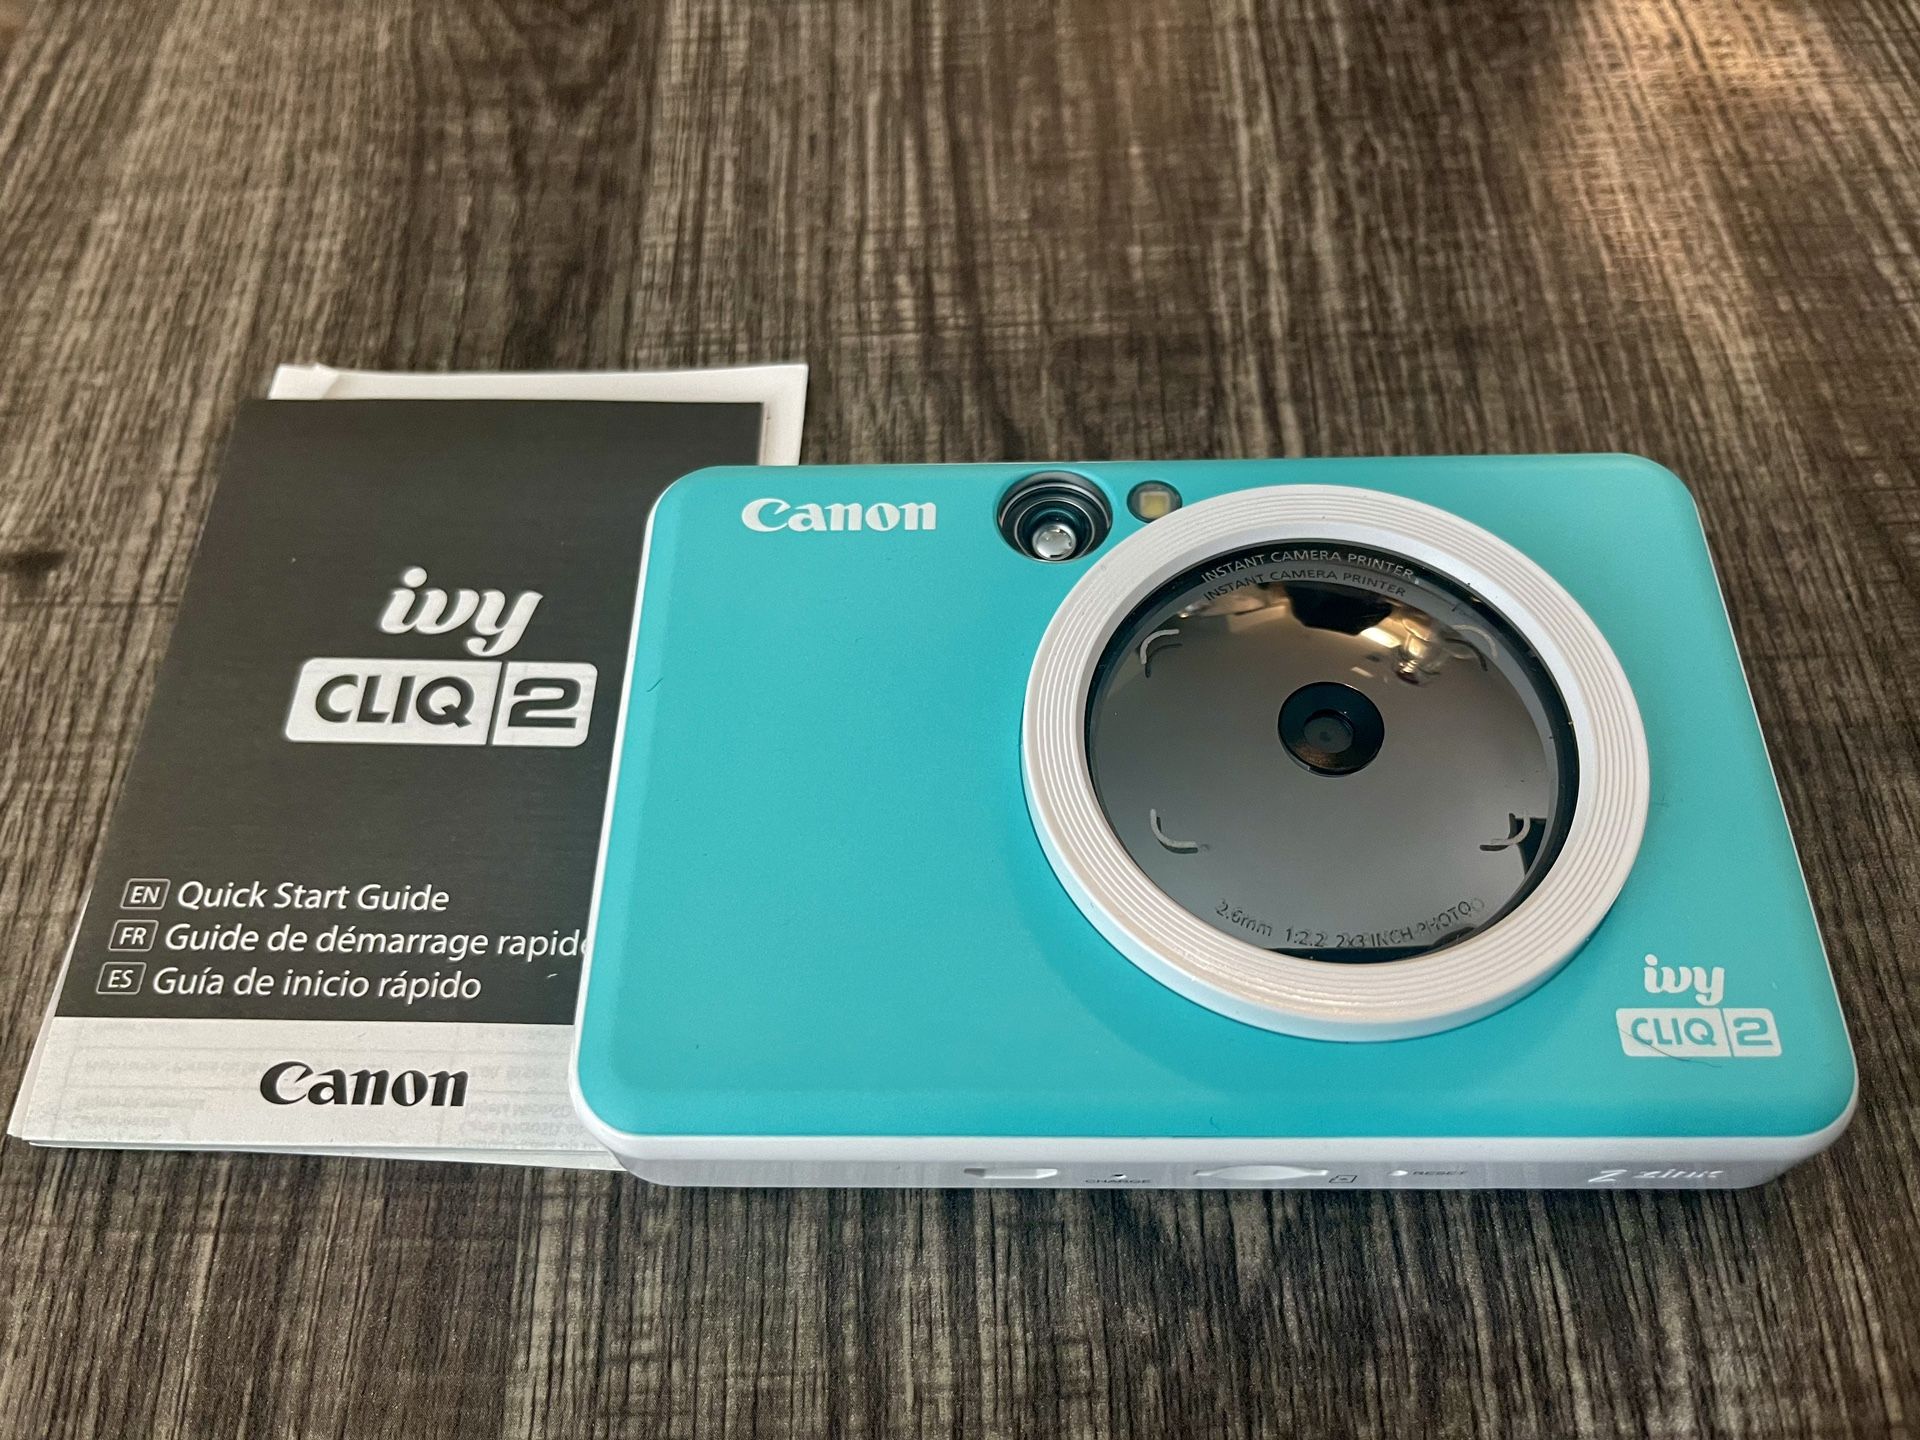 Canon Ivy Cliq 2